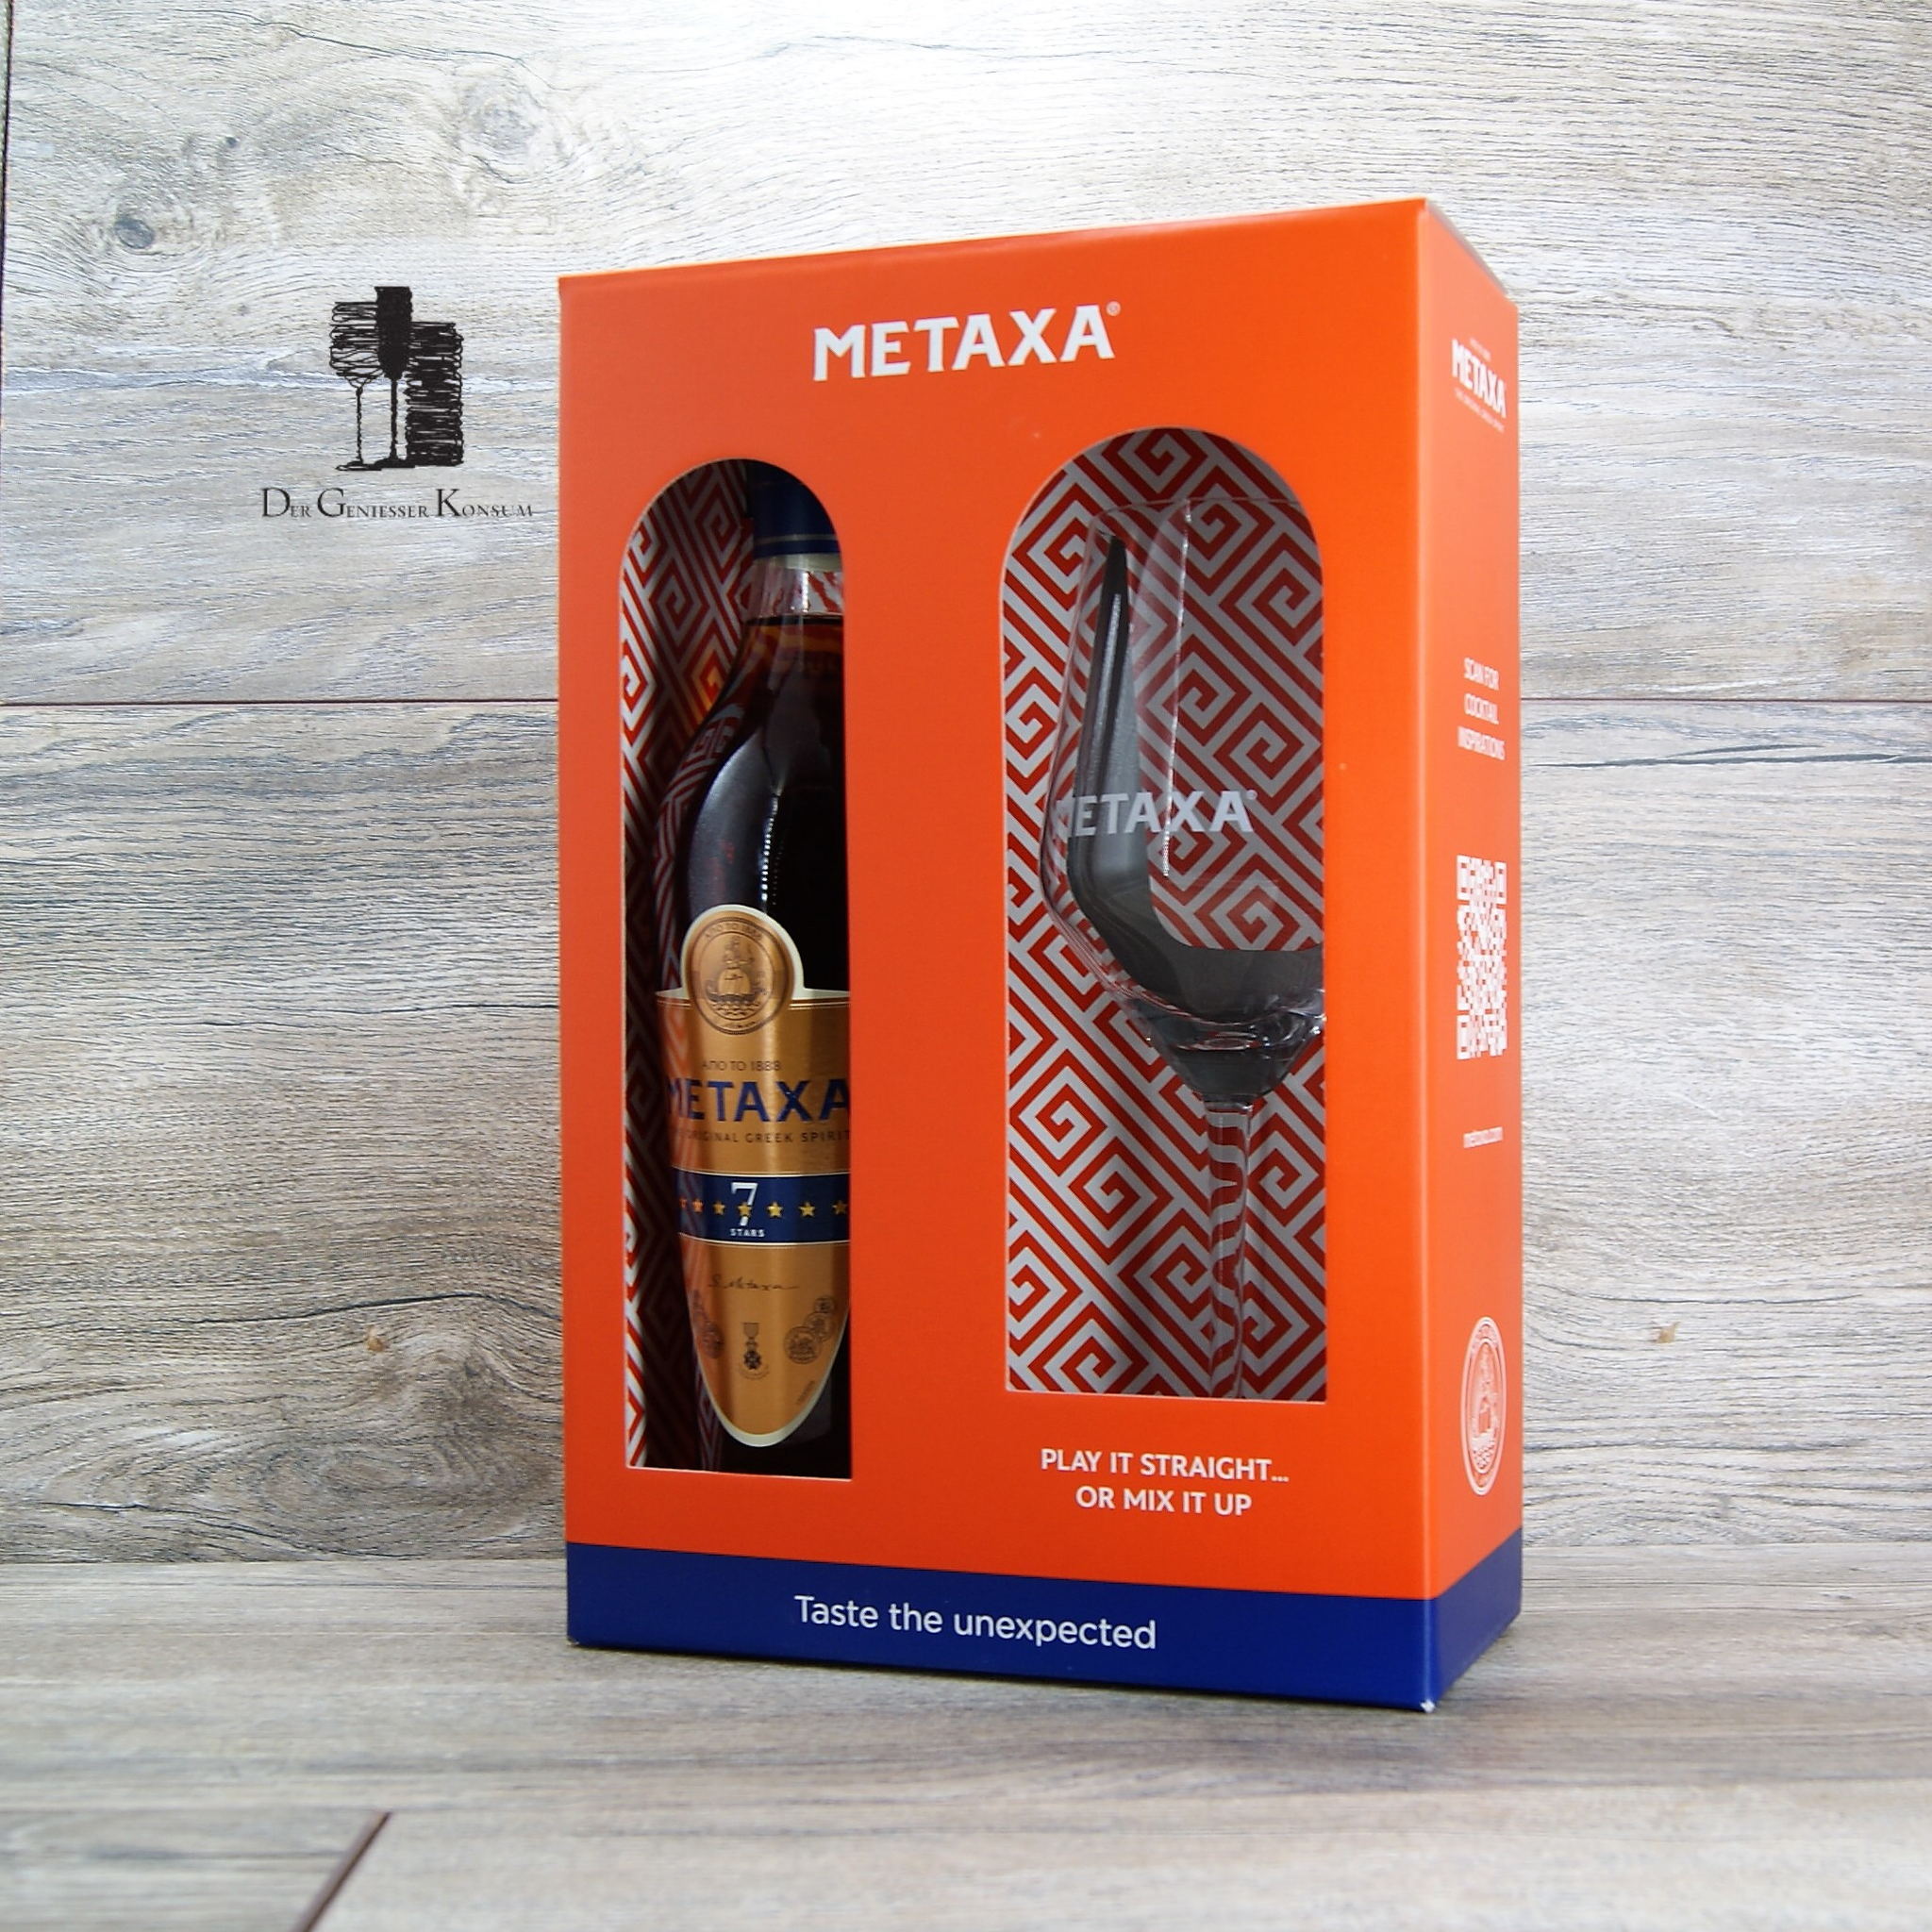 Metaxa 7 Sterne Der Glas, – Geniesser 40% 1x 0,7l, Konsum Geschenk-Edition mit